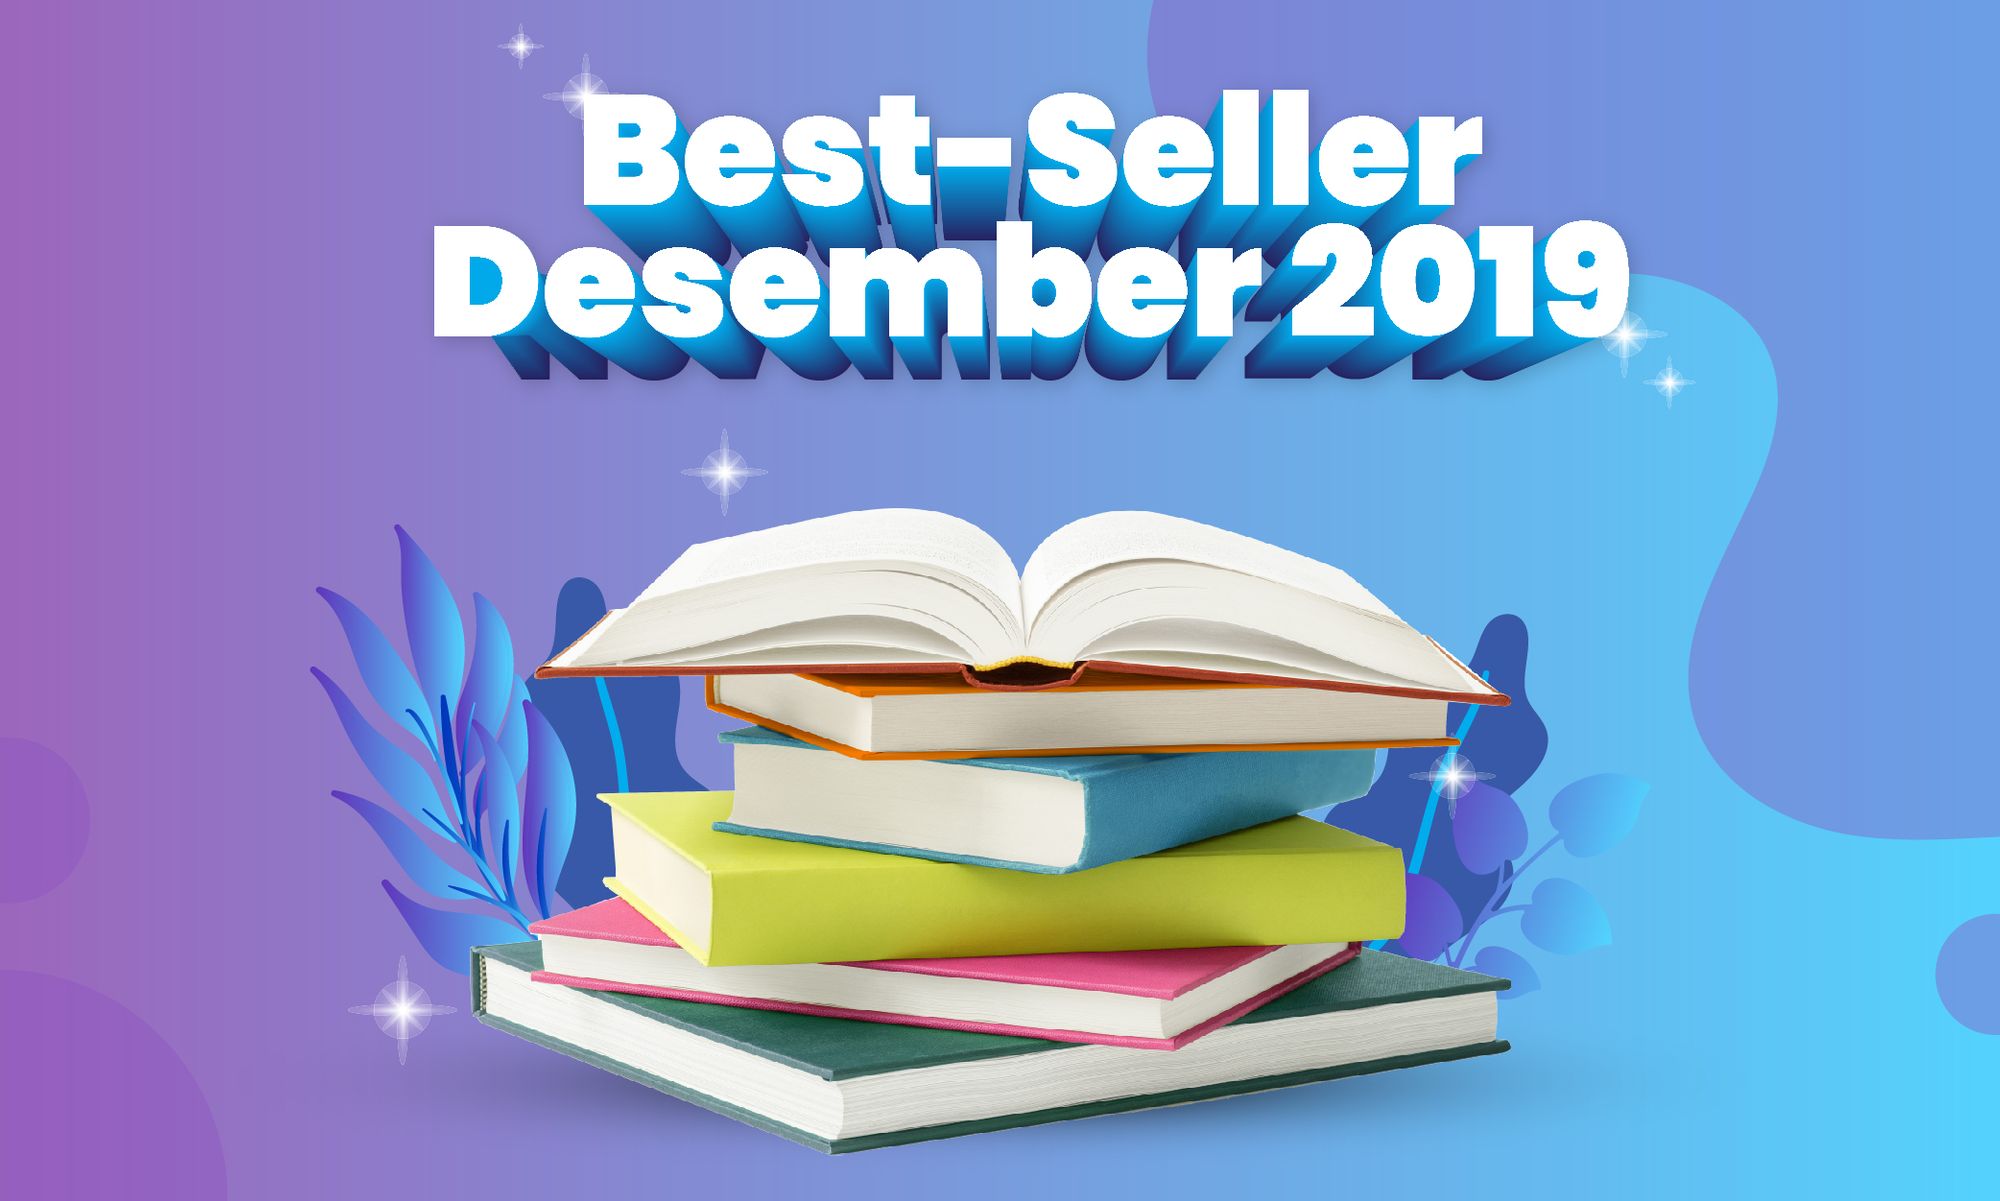 Daftar Buku Best-Seller Desember 2019 versi Gramedia.com